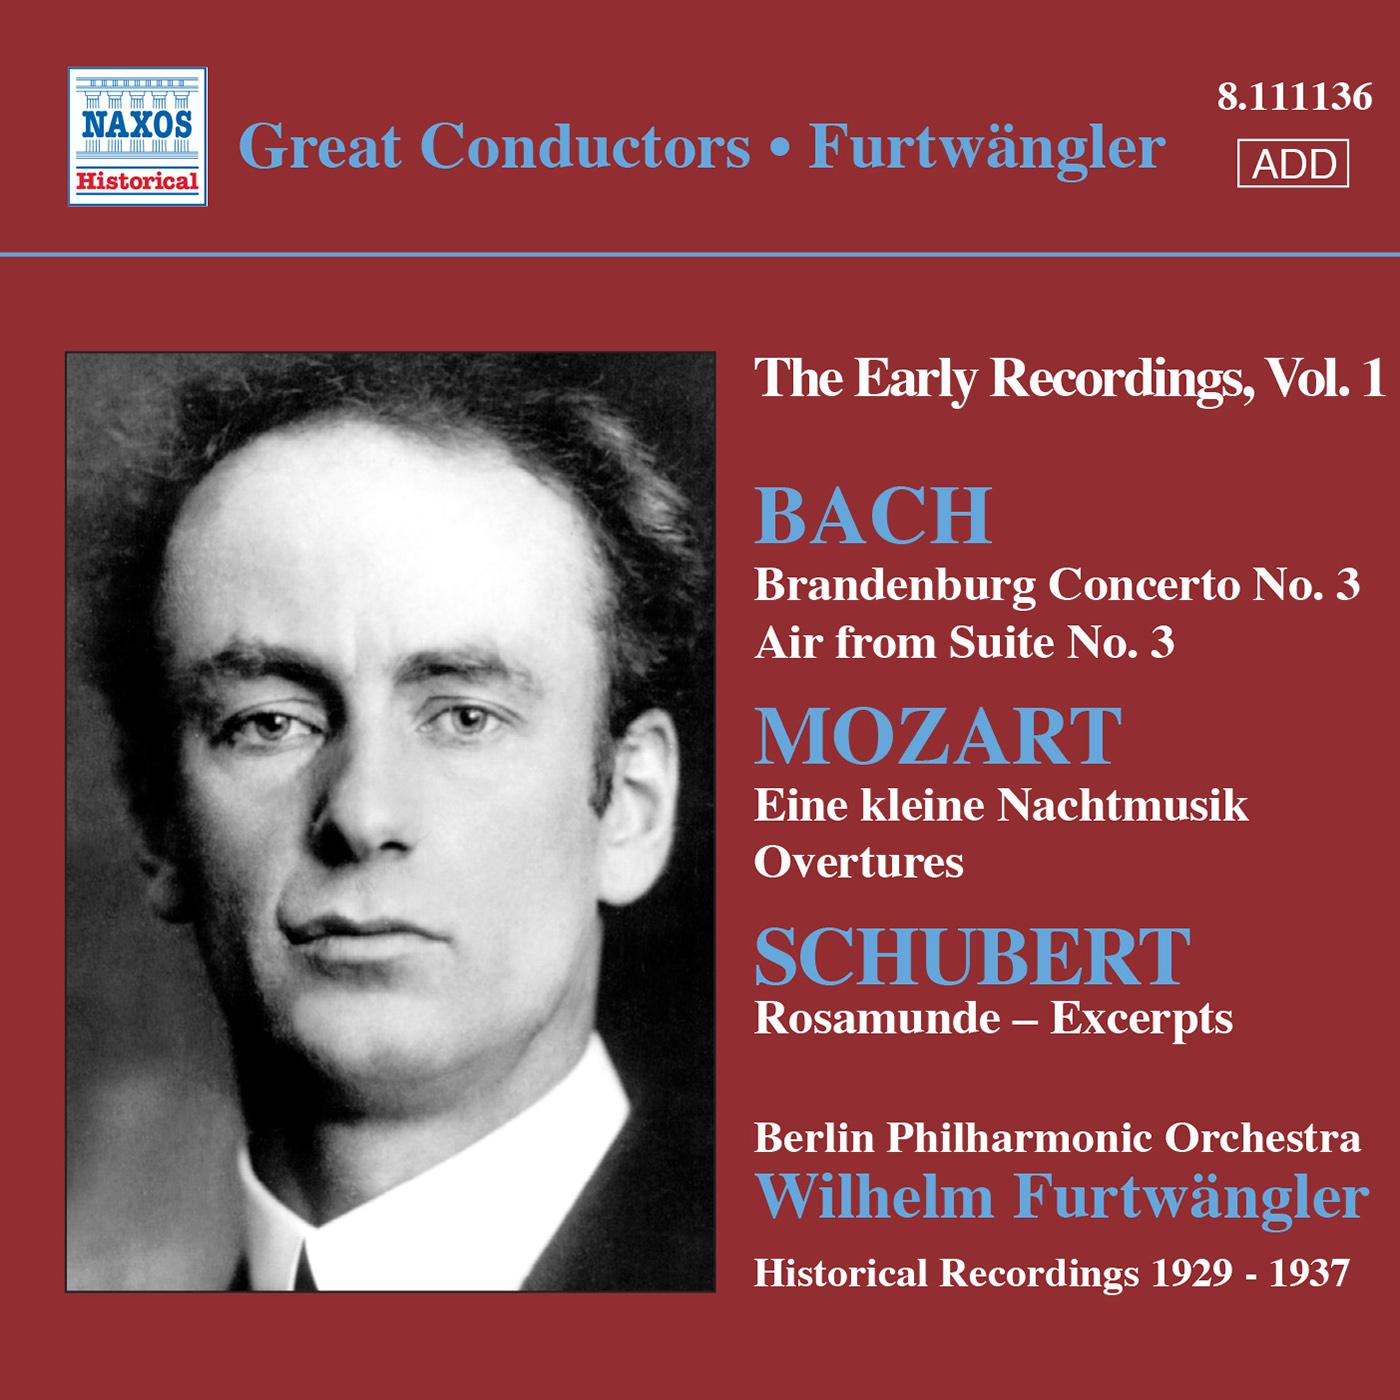 BACH, J.S.: Brandenburg Concerto No. 3 / MOZART, W.A.: Eine kleine Nachtmusik / SCHUBERT: Rosamunde 专辑